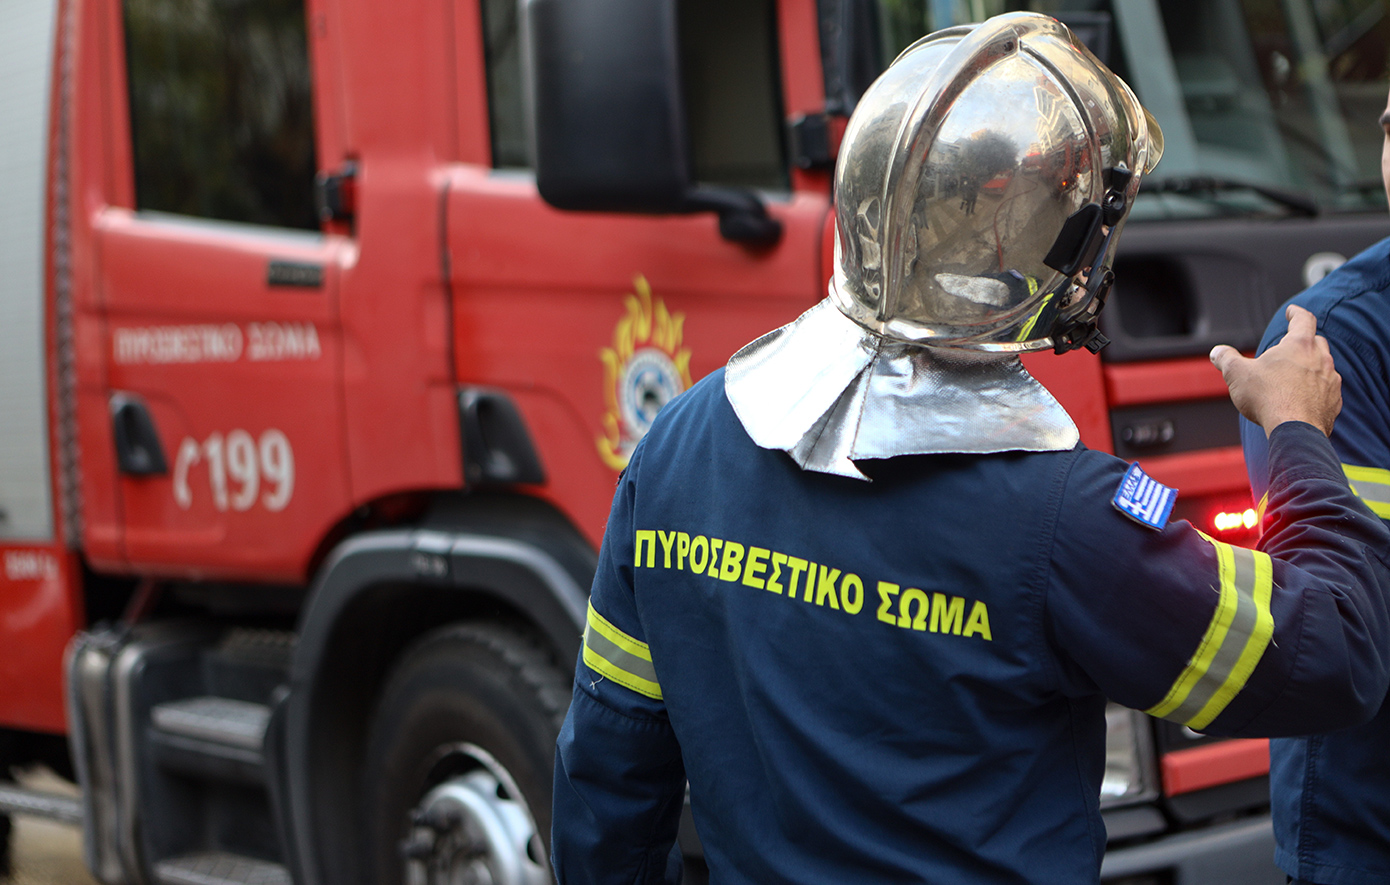 Συναγερμός στην Πυροσβεστική για ηλικιωμένο που έπεσε σε ρέμα στη Θεσσαλονίκη &#8211; Μεταφέρθηκε σε ασφαλές σημείο